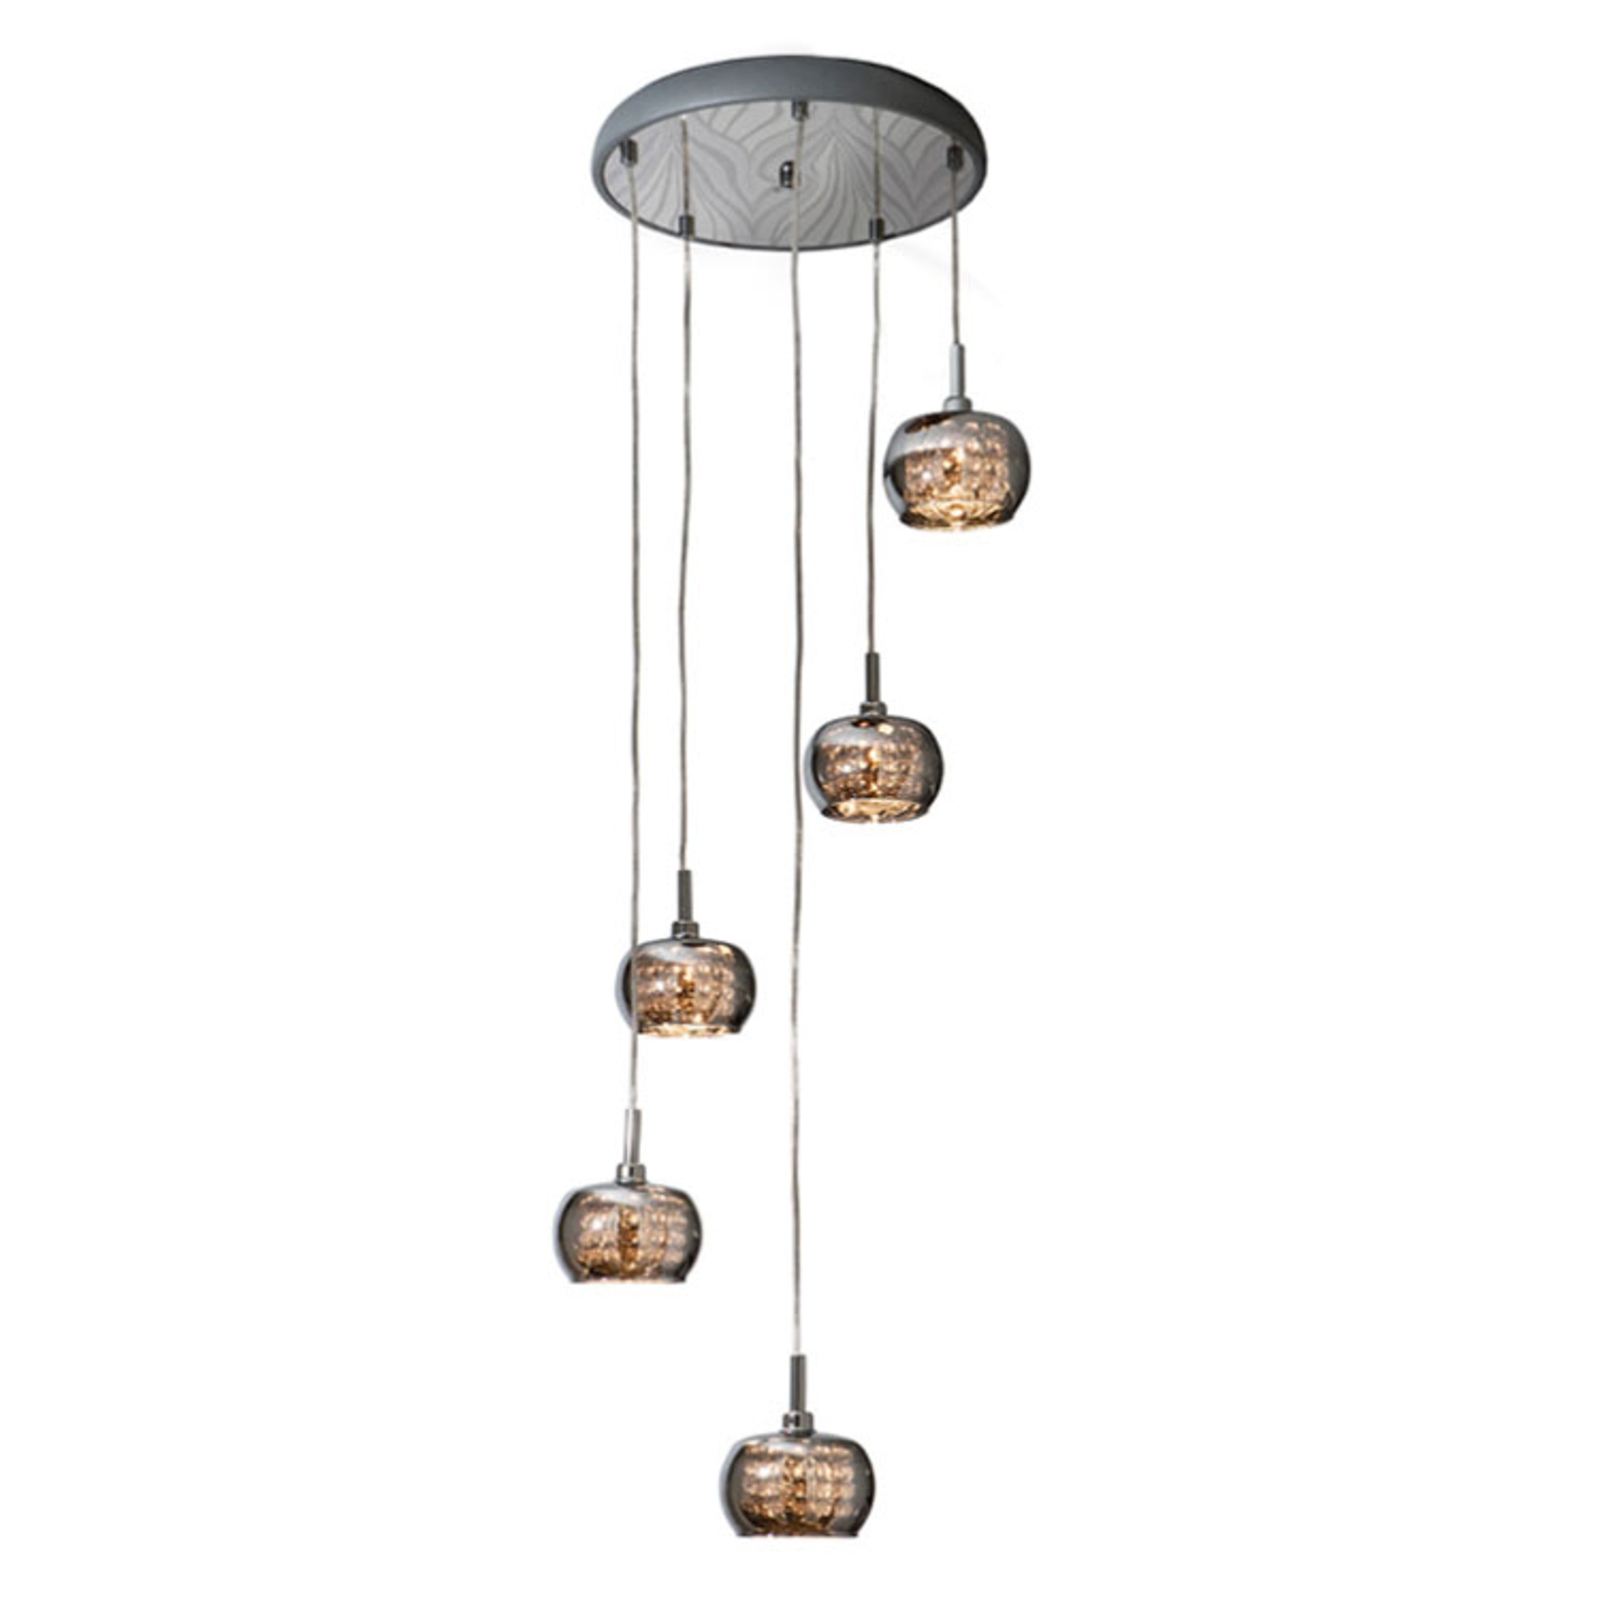 Arian hanglamp met kristallen, 5-lamps uitvoering